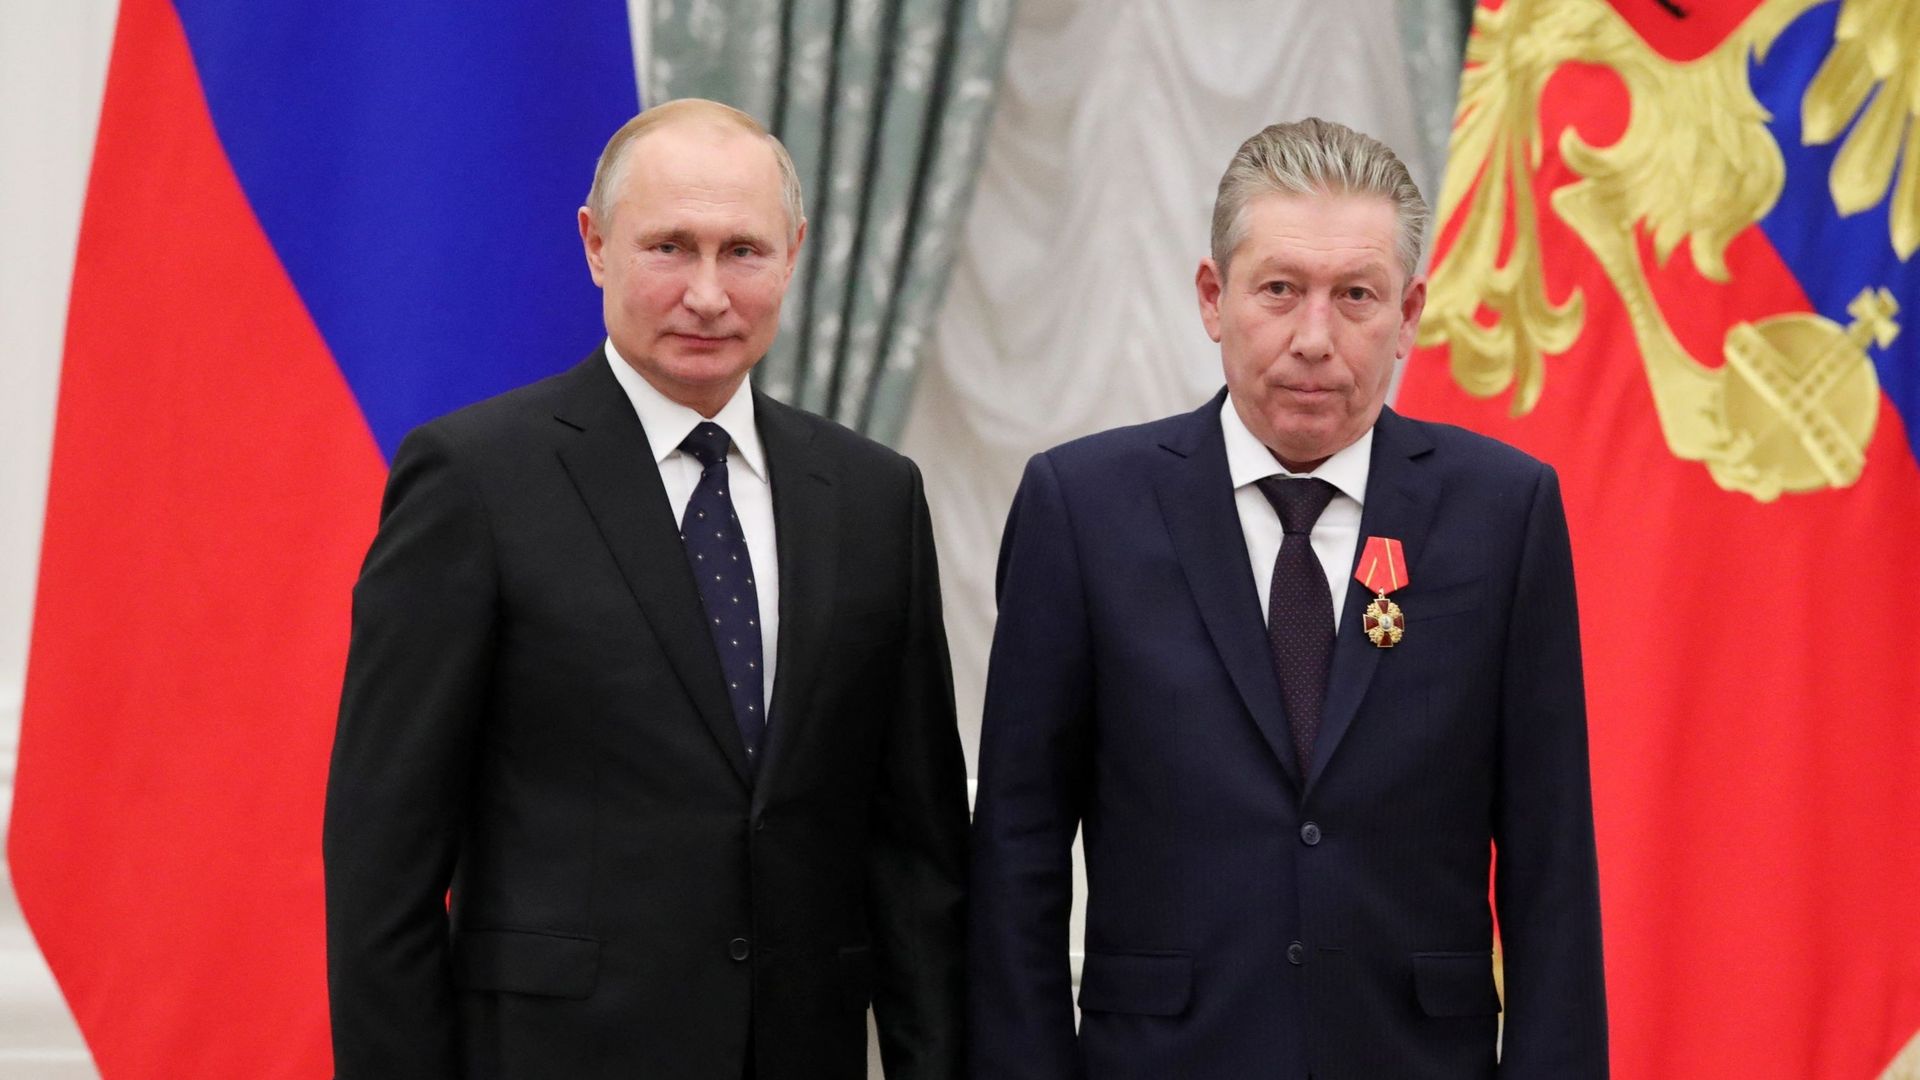 Le président russe Vladimir Poutine et le président du conseil d'administration de la compagnie pétrolière Lukoil Ravil Maganov posent pour une photo lors d'une cérémonie de remise de prix au Kremlin à Moscou, le 21 novembre 2019.